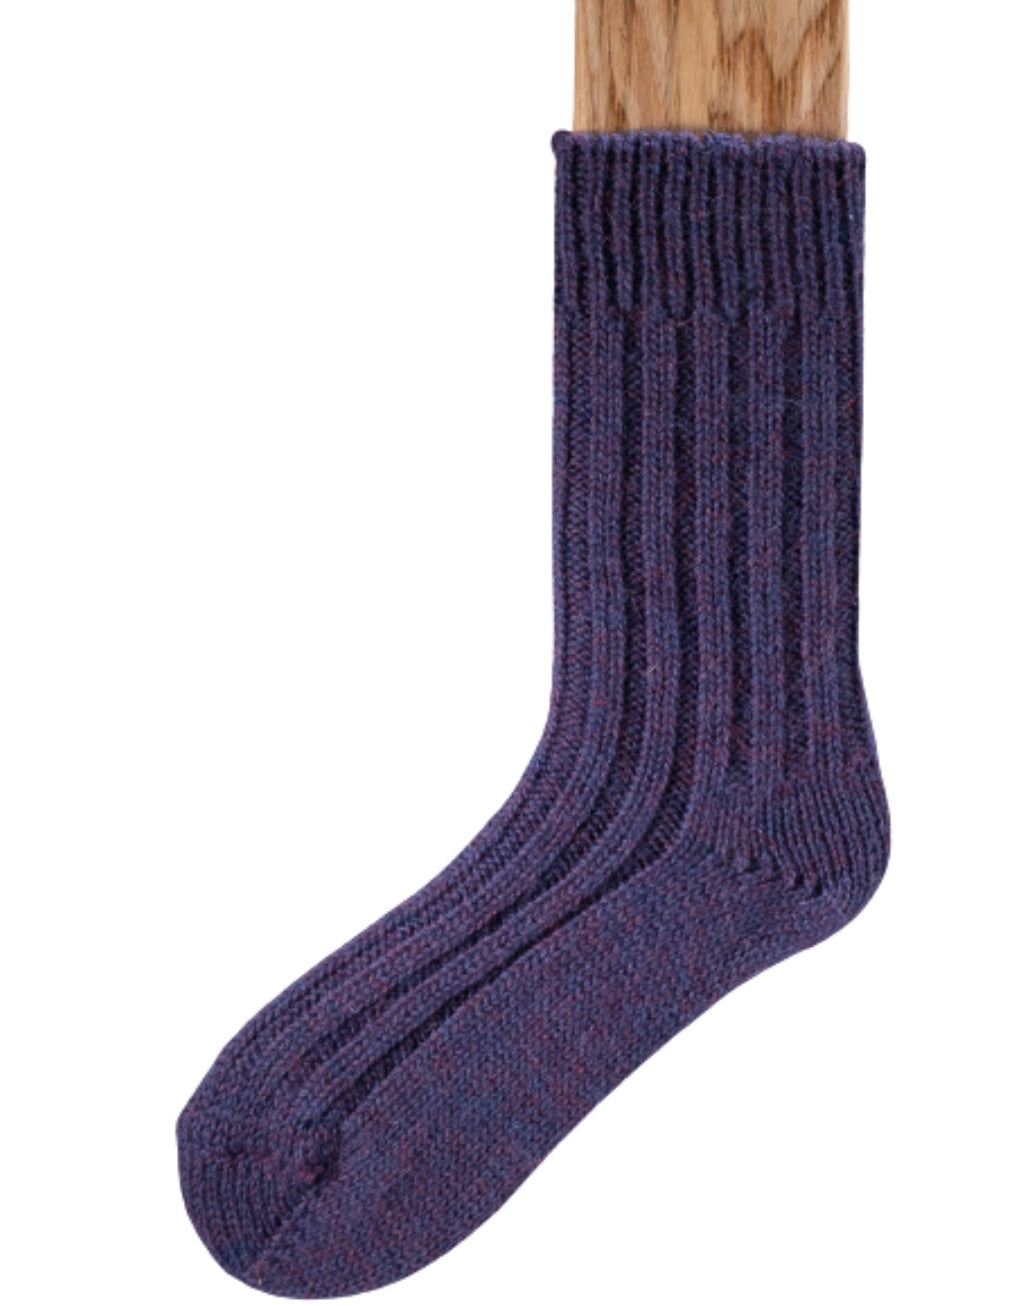 Connemara Tweed Socks - 100% Wool